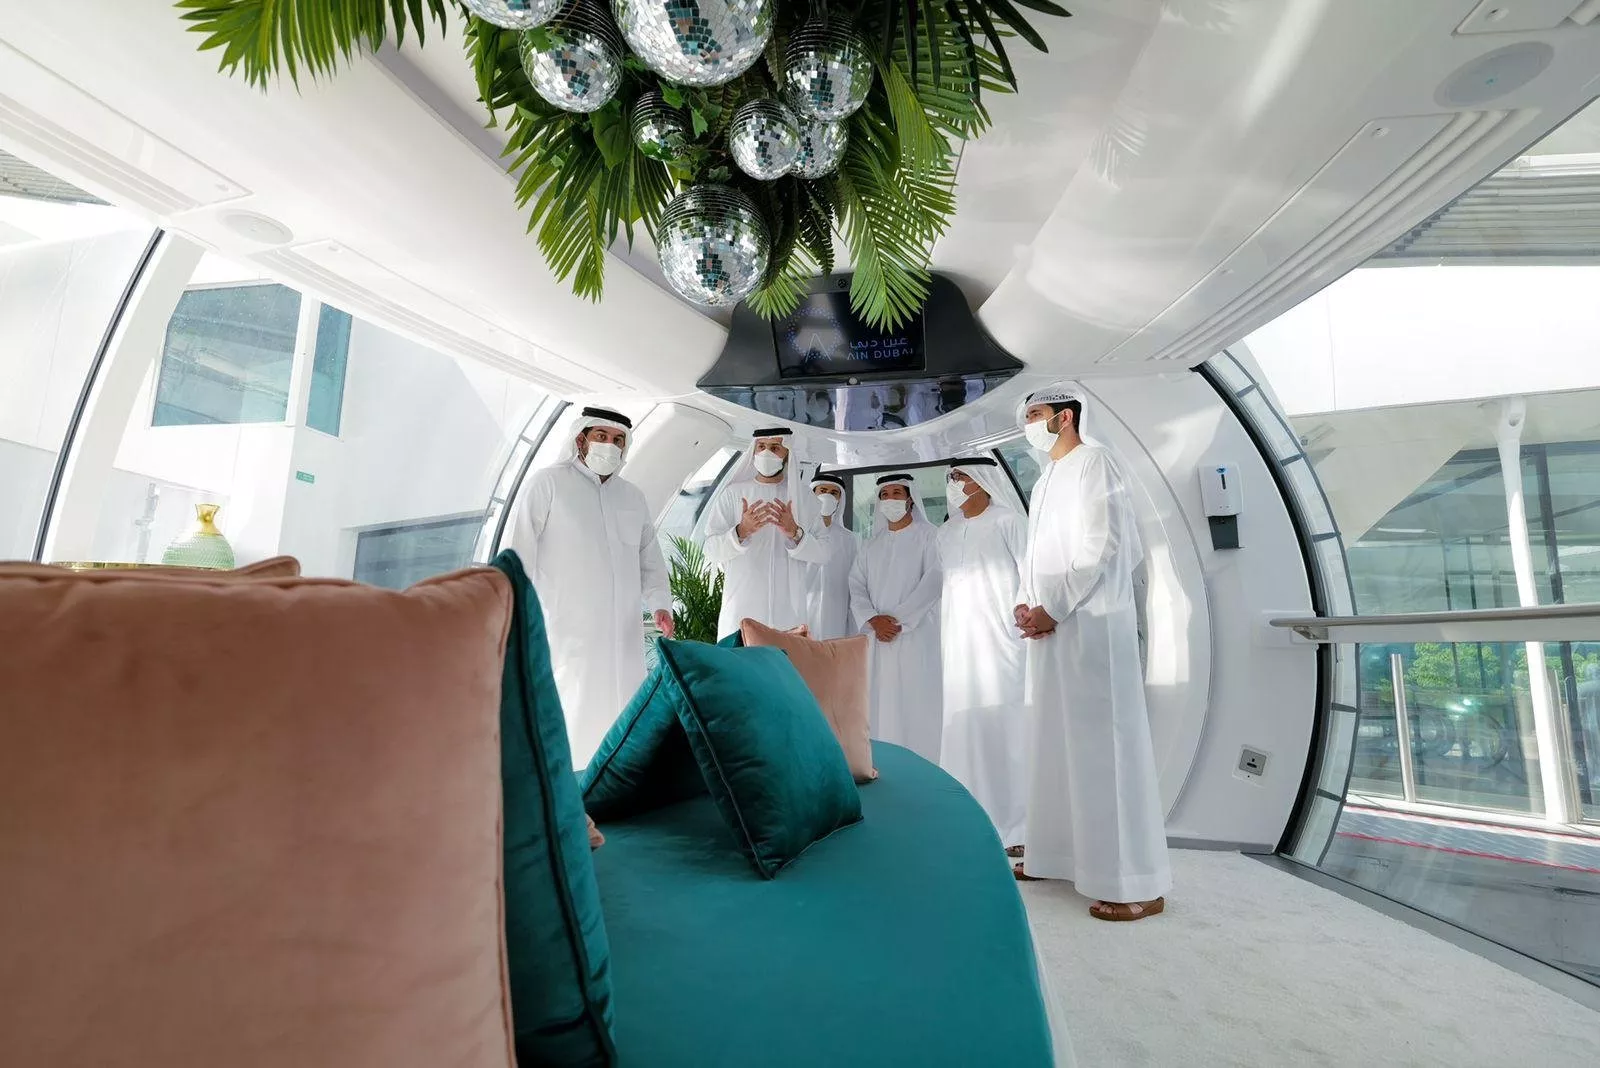 عين دبي: العجلة الأعلى في العالم تفتح أبوابها أمام الزوار